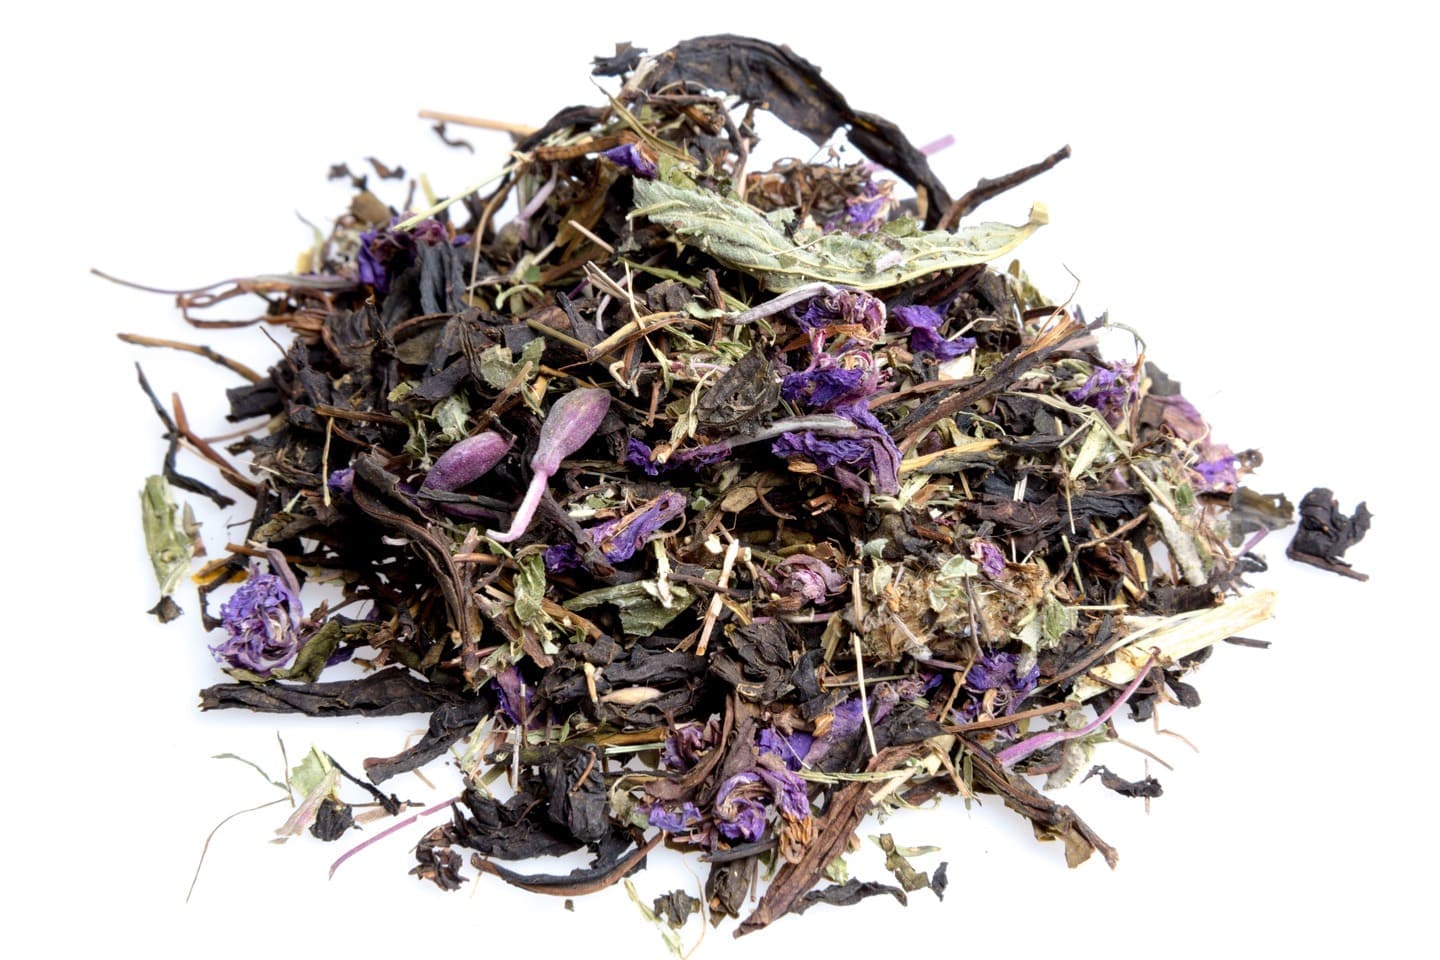 Листья шалфея: полезные свойства и противопоказания, инструкция по применению для приготовления чая, польза и вред фиточая в пакетиках для здоровья